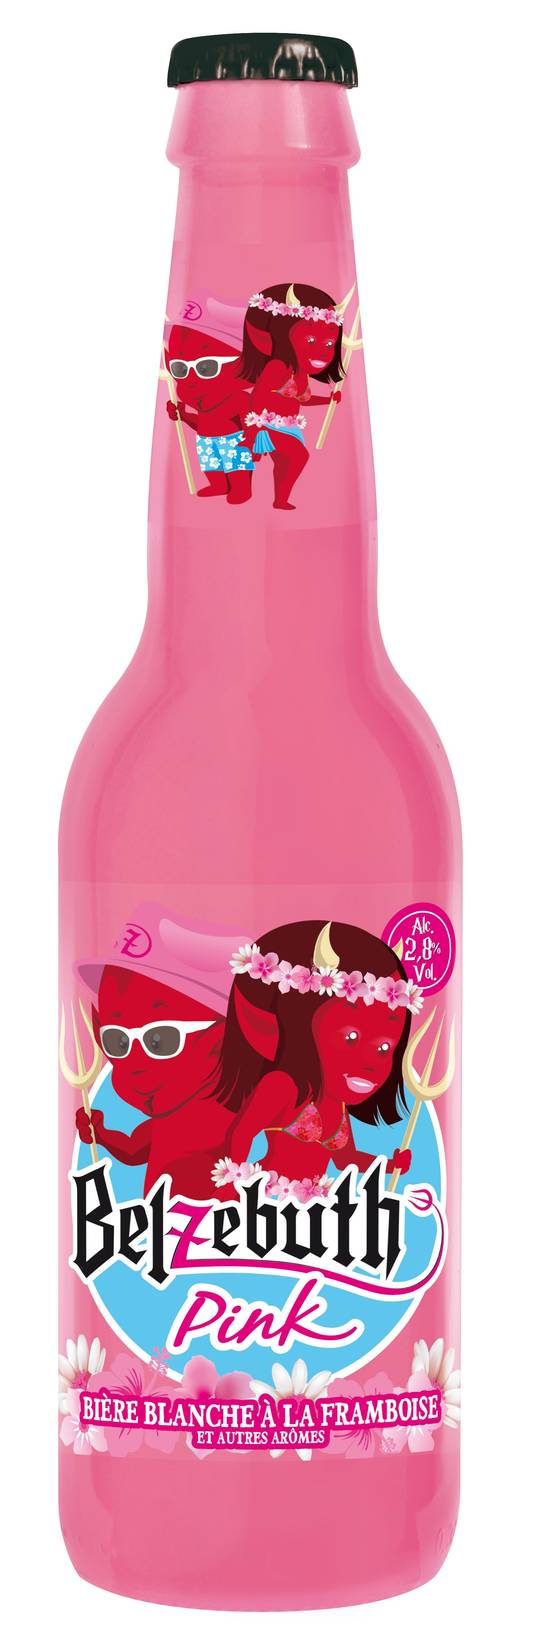 Belzebuth - Pink bière blanche à la framboise et autre arômes domestique (330 ml)